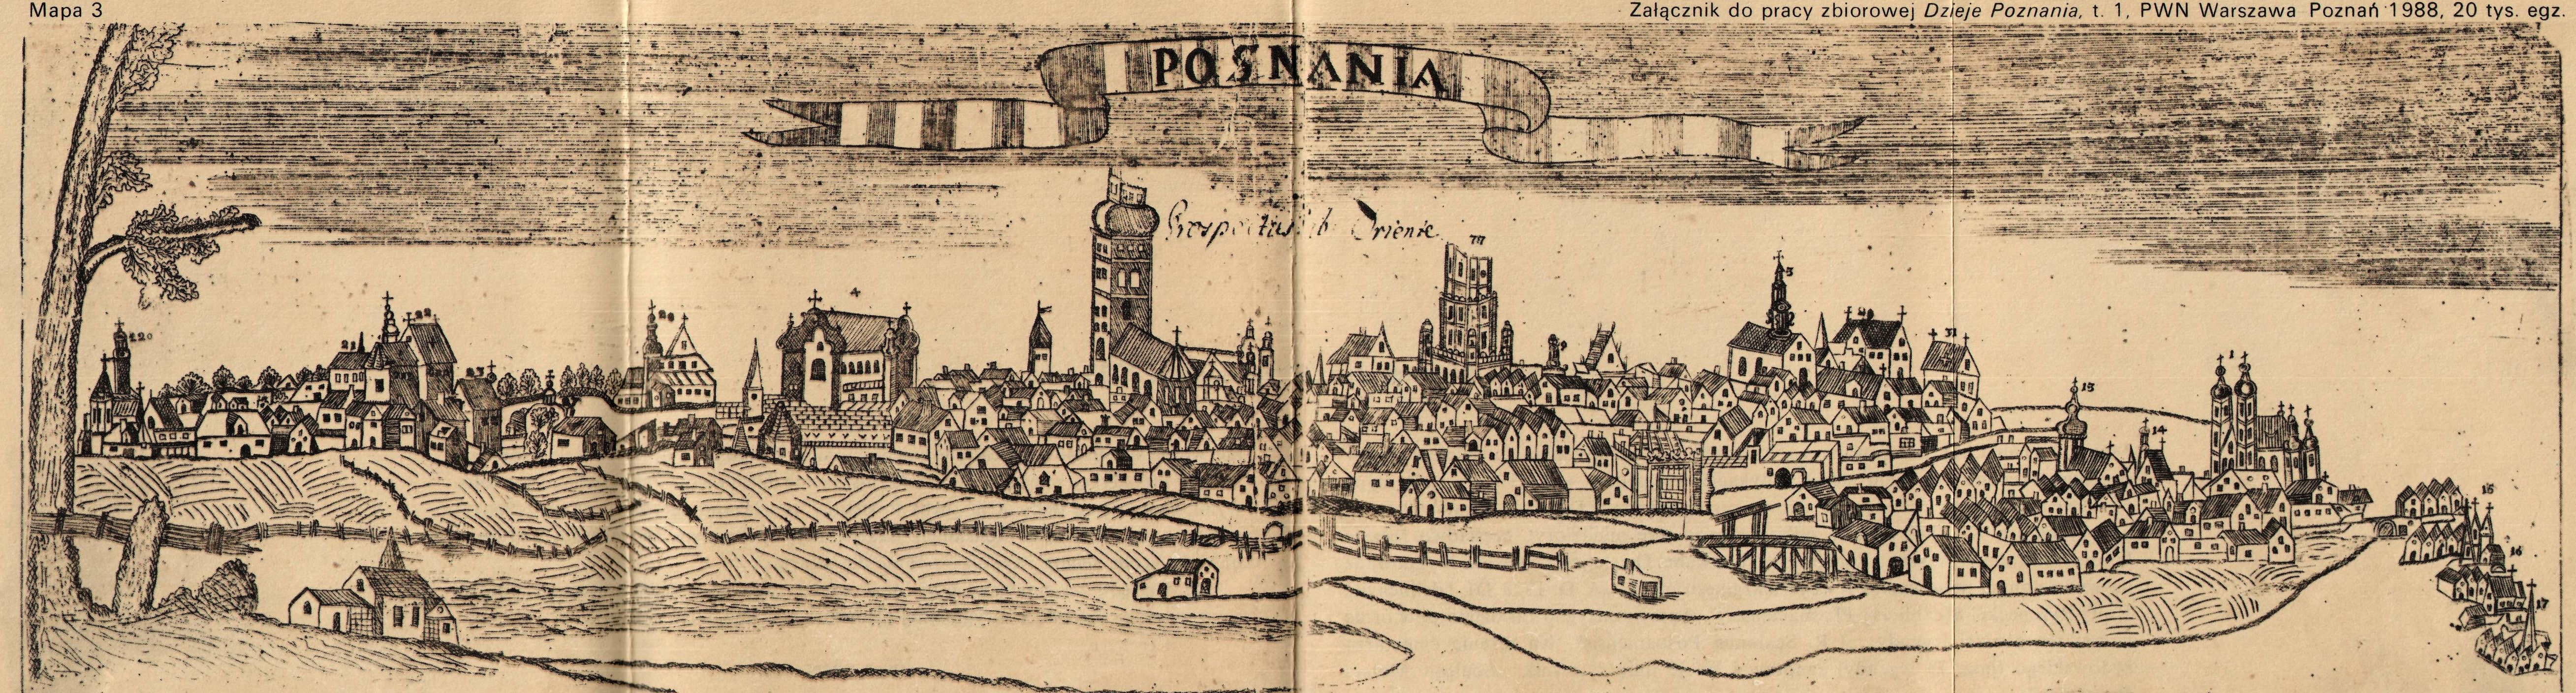 Poznań mapa Jana Rzepeckiego z 1728 r. 